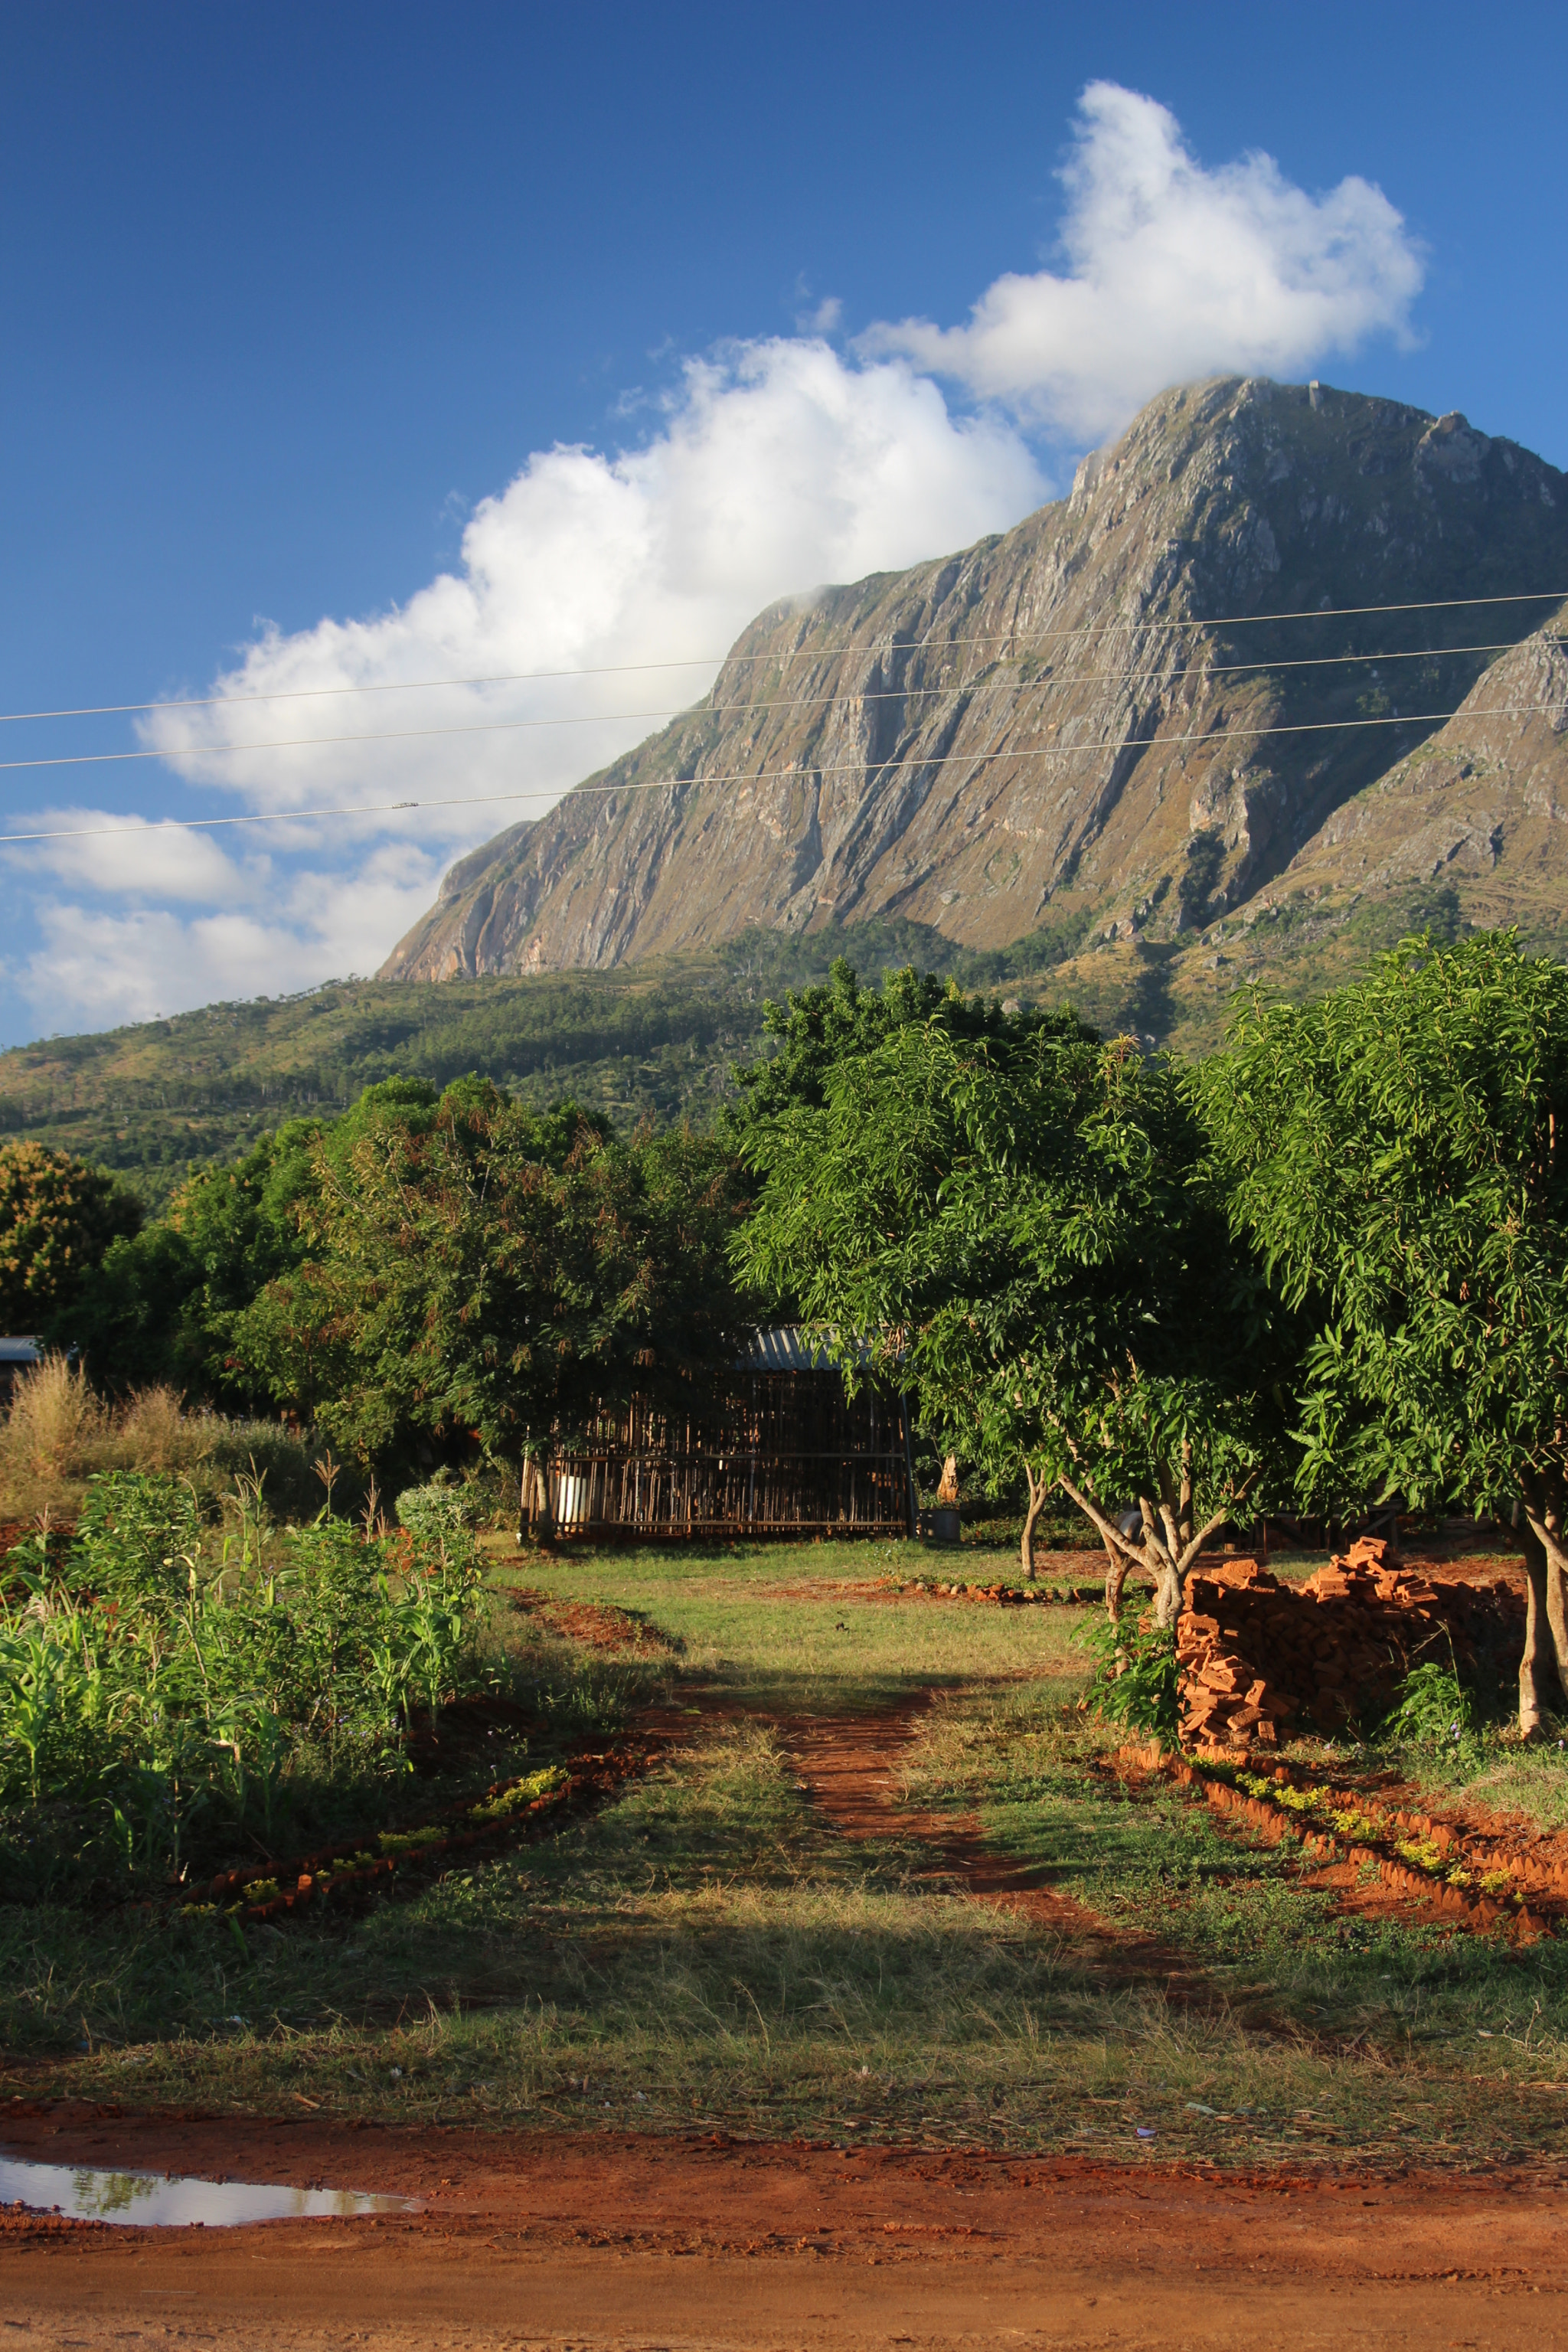 Canon EF 35-105mm f/3.5-4.5 sample photo. Mount mulanje, malawi. photography